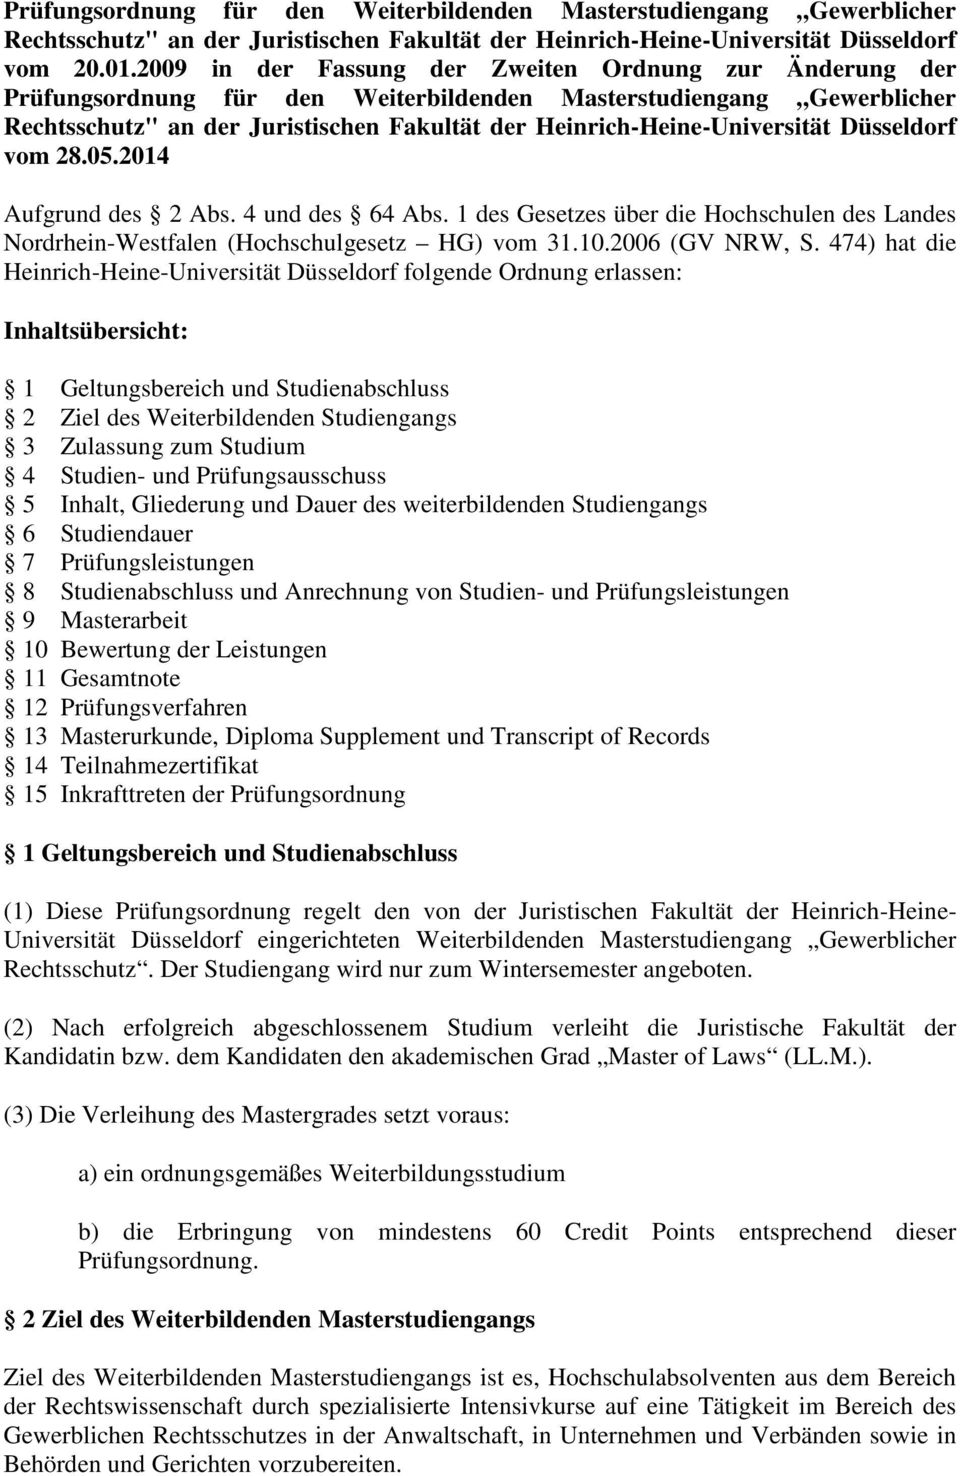 Heinrich-Heine-Universität Düsseldorf vom 28.05.2014 Aufgrund des 2 Abs. 4 und des 64 Abs. 1 des Gesetzes über die Hochschulen des Landes Nordrhein-Westfalen (Hochschulgesetz HG) vom 31.10.